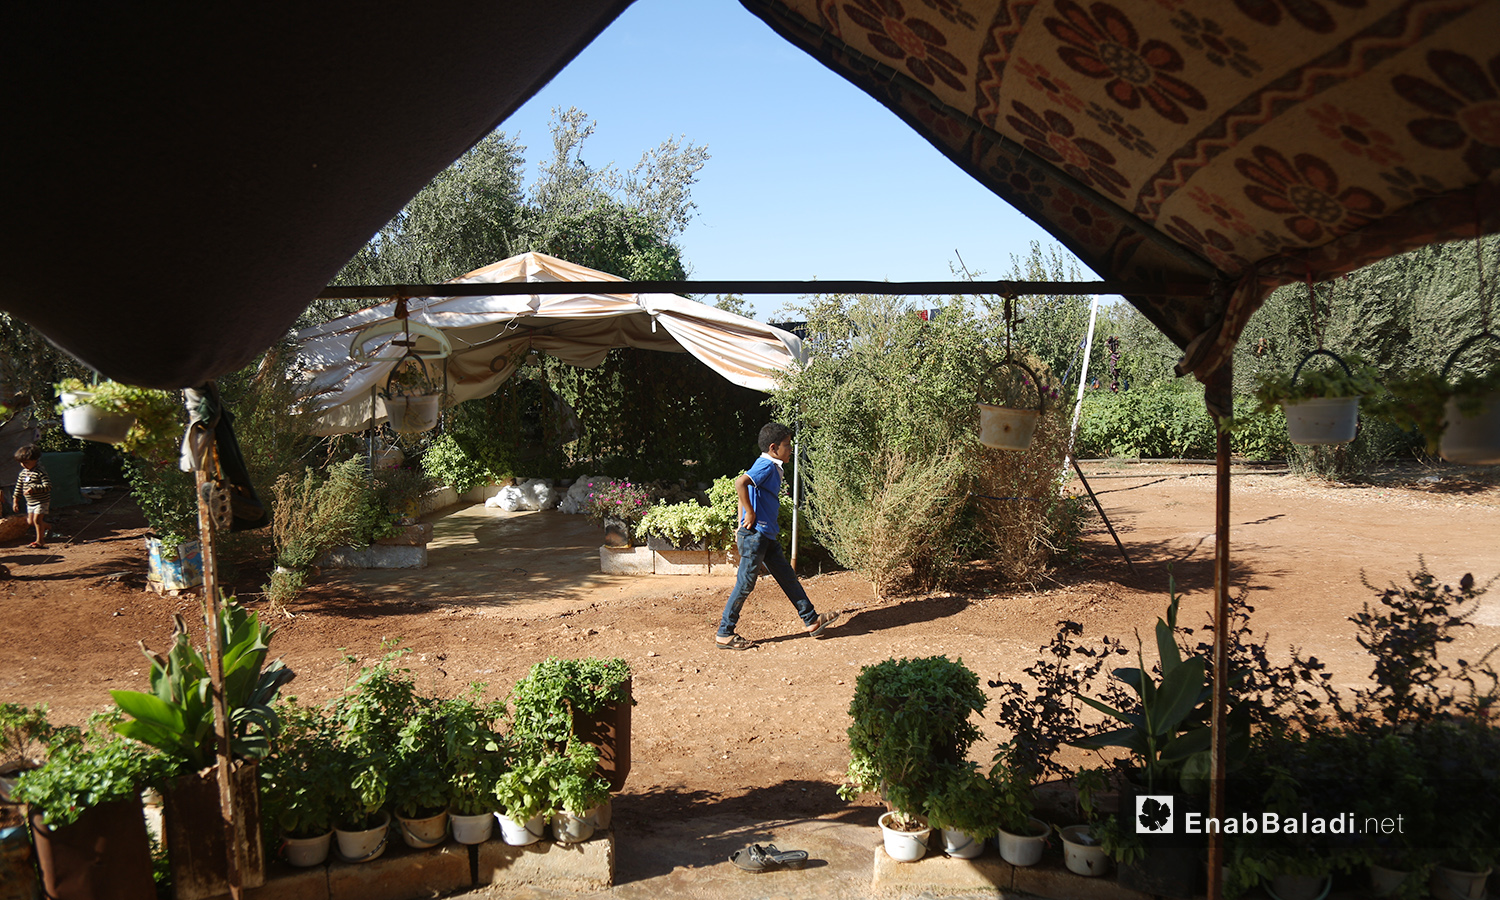 تحول مخيم "المطار" إلى حديقة واسعة تنتشر فيها الظلال بعد اهتمام سكانه بزراعة النباتات فيها  - تشرين الأول 2020 (عنب بلدي/ يوسف غريبي)